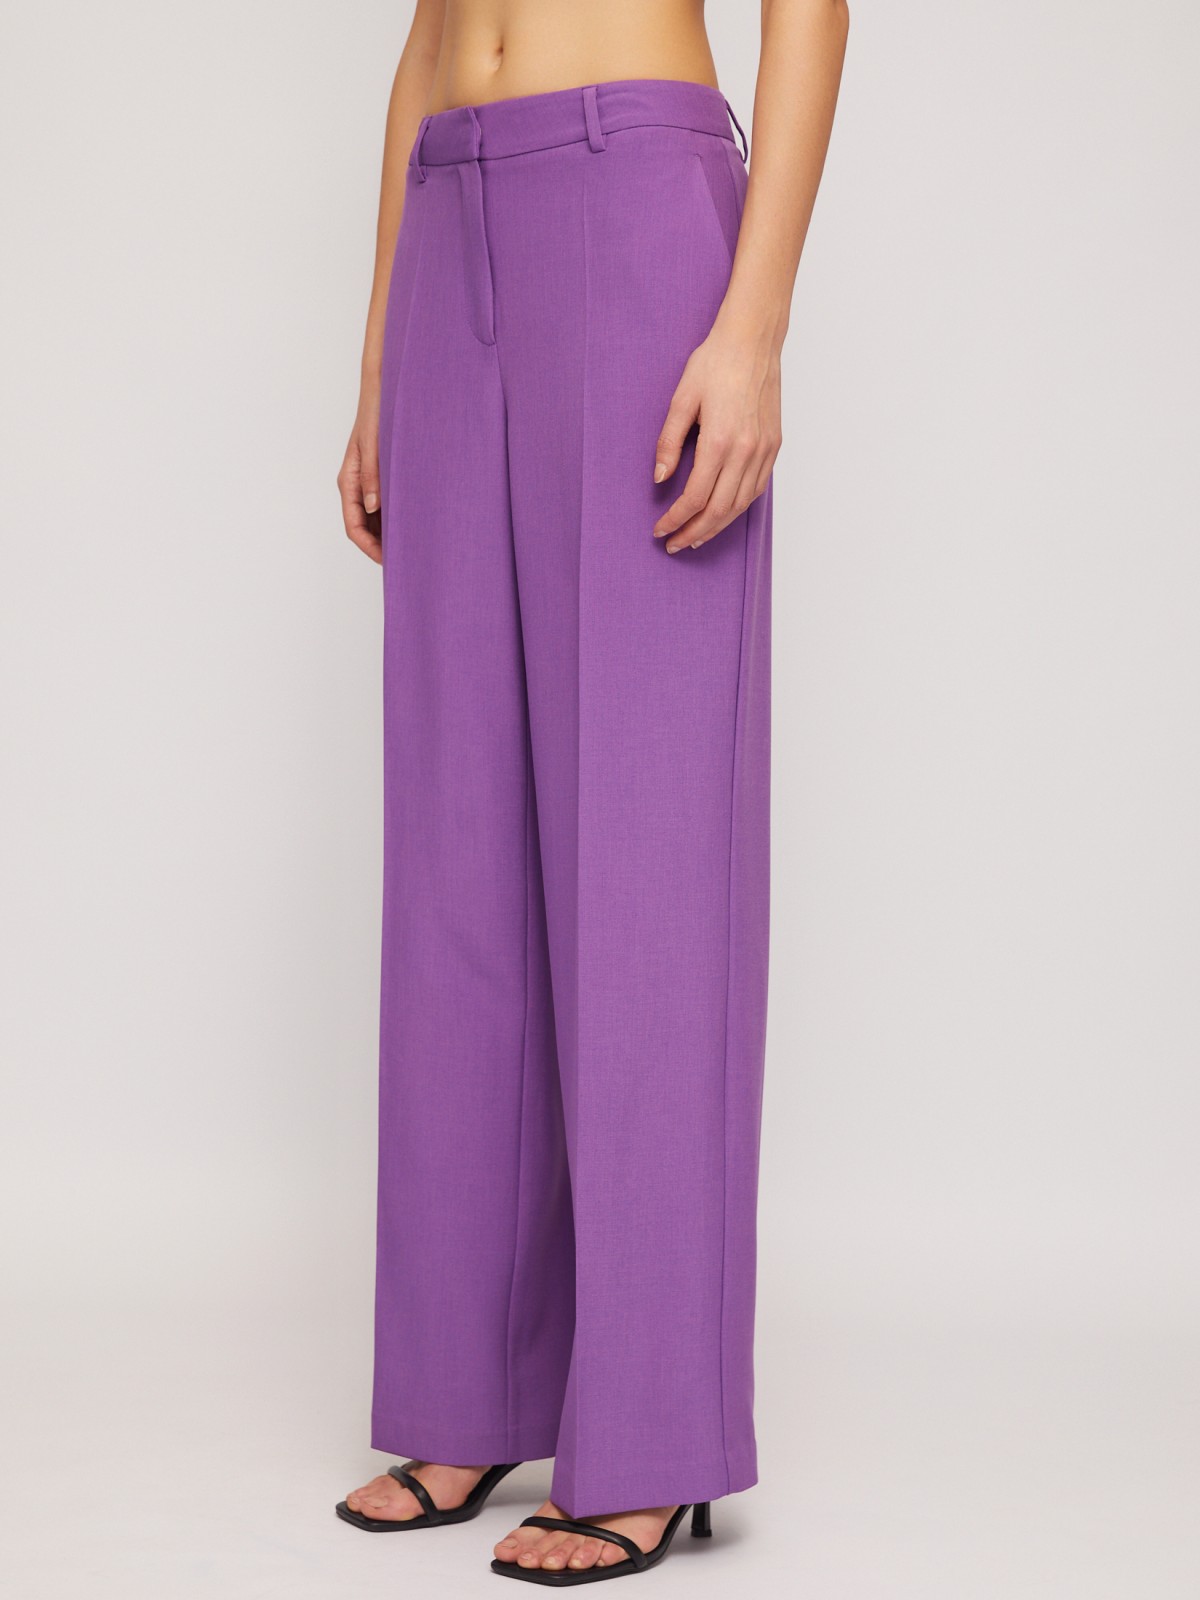 Классические прямые брюки со стрелками zolla 024247350063, цвет фиолетовый, размер XS - фото 2